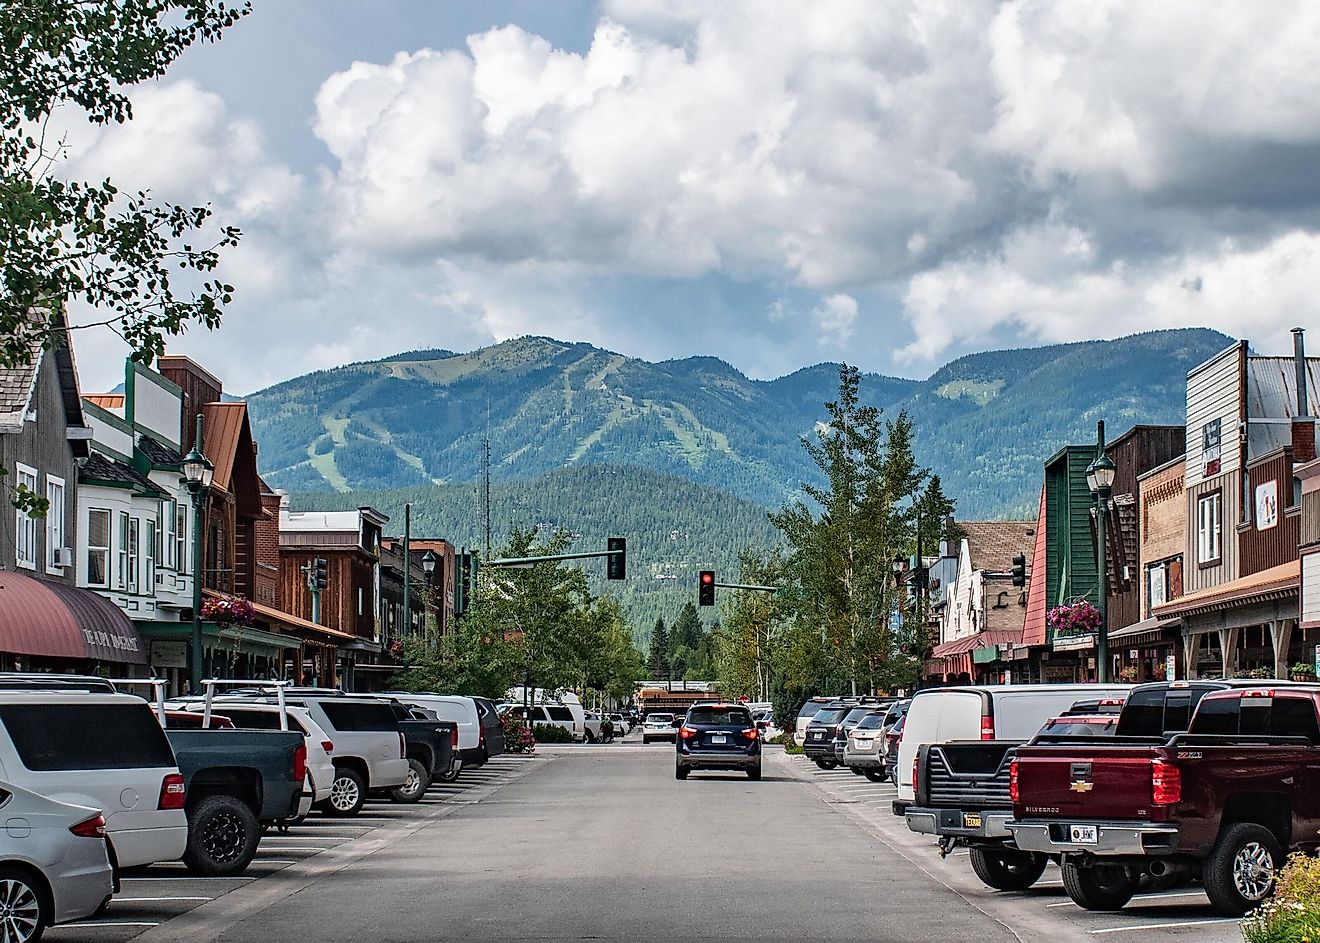 Street view in Whitefish, Montana, via Beeldtype / Shutterstock.com